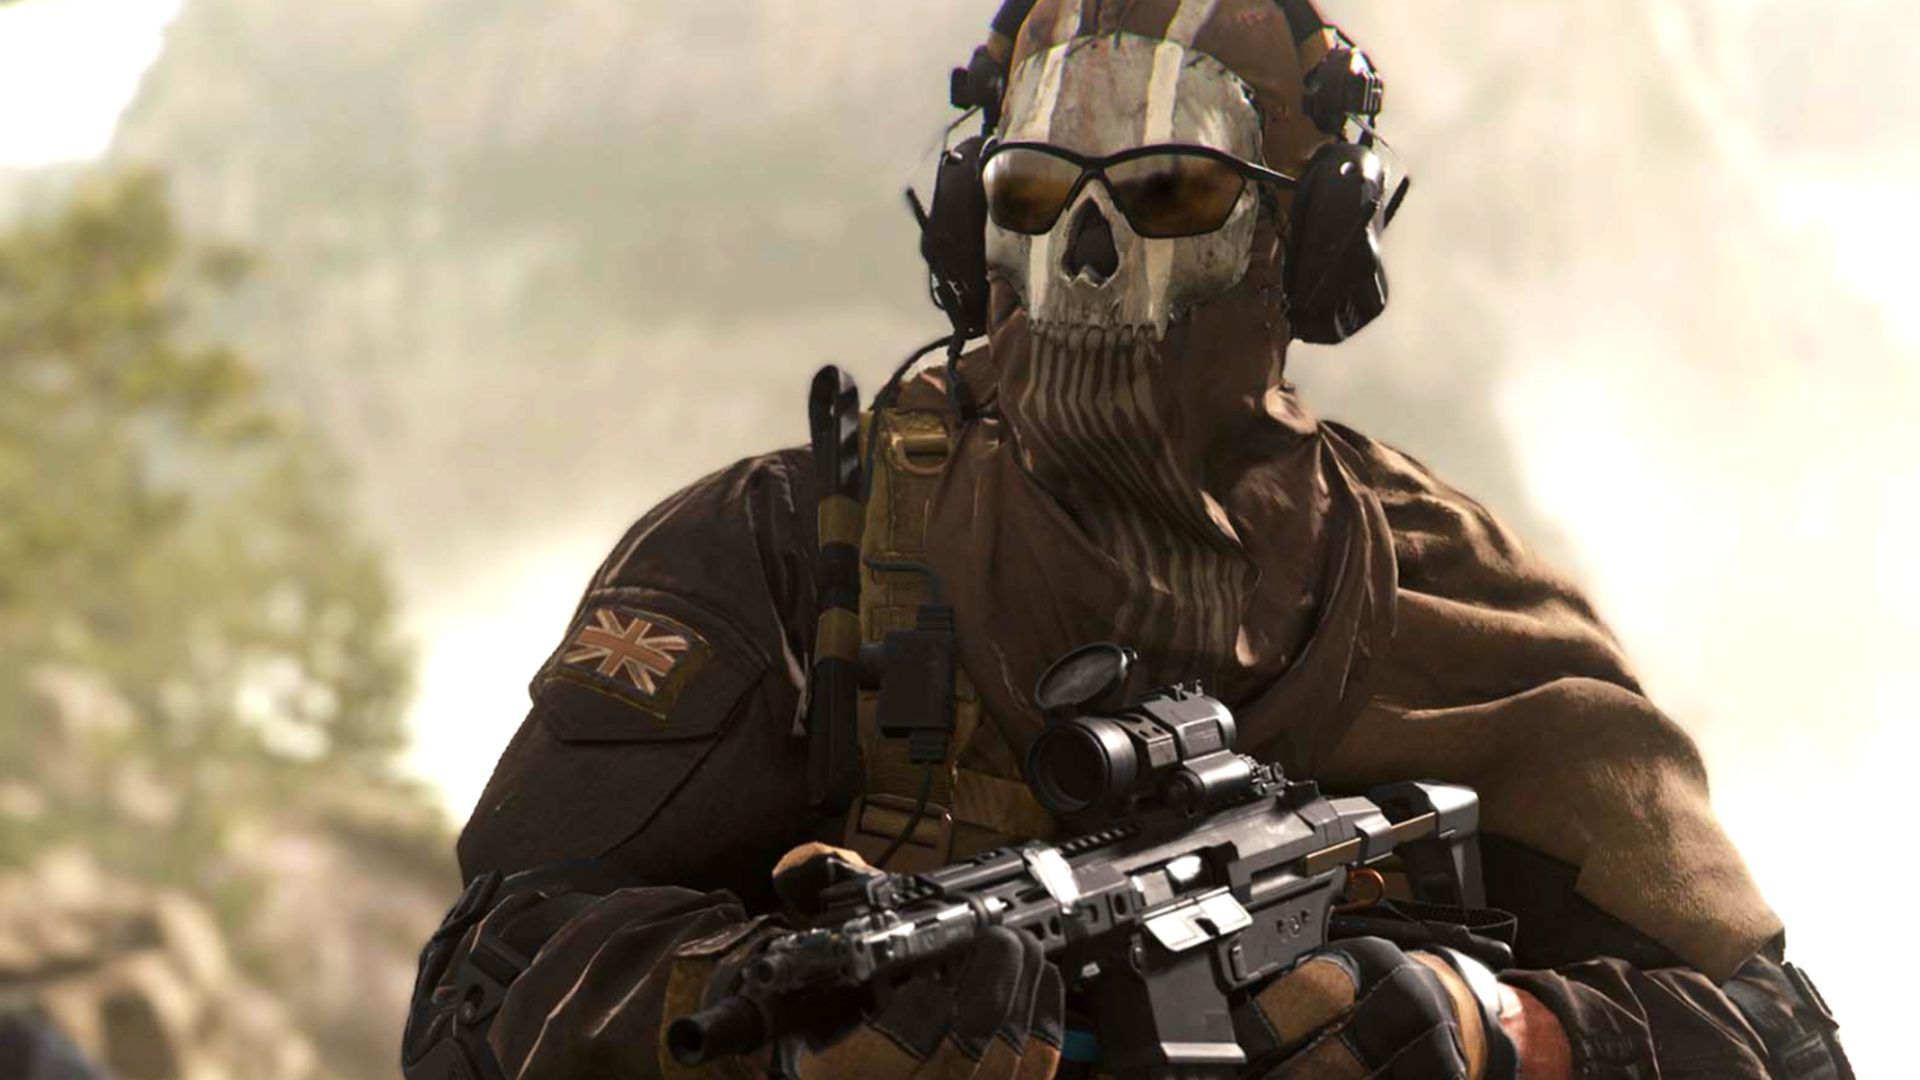 Игра call of duty modern warfare 2022. Гоуст Call of Duty Modern Warfare 2 2022. Call of Duty: Modern Warfare II (2022). Саймон гоуст Райли Call of Duty Modern Warfare 2 2022. Ghost Call of Duty Modern Warfare 2.